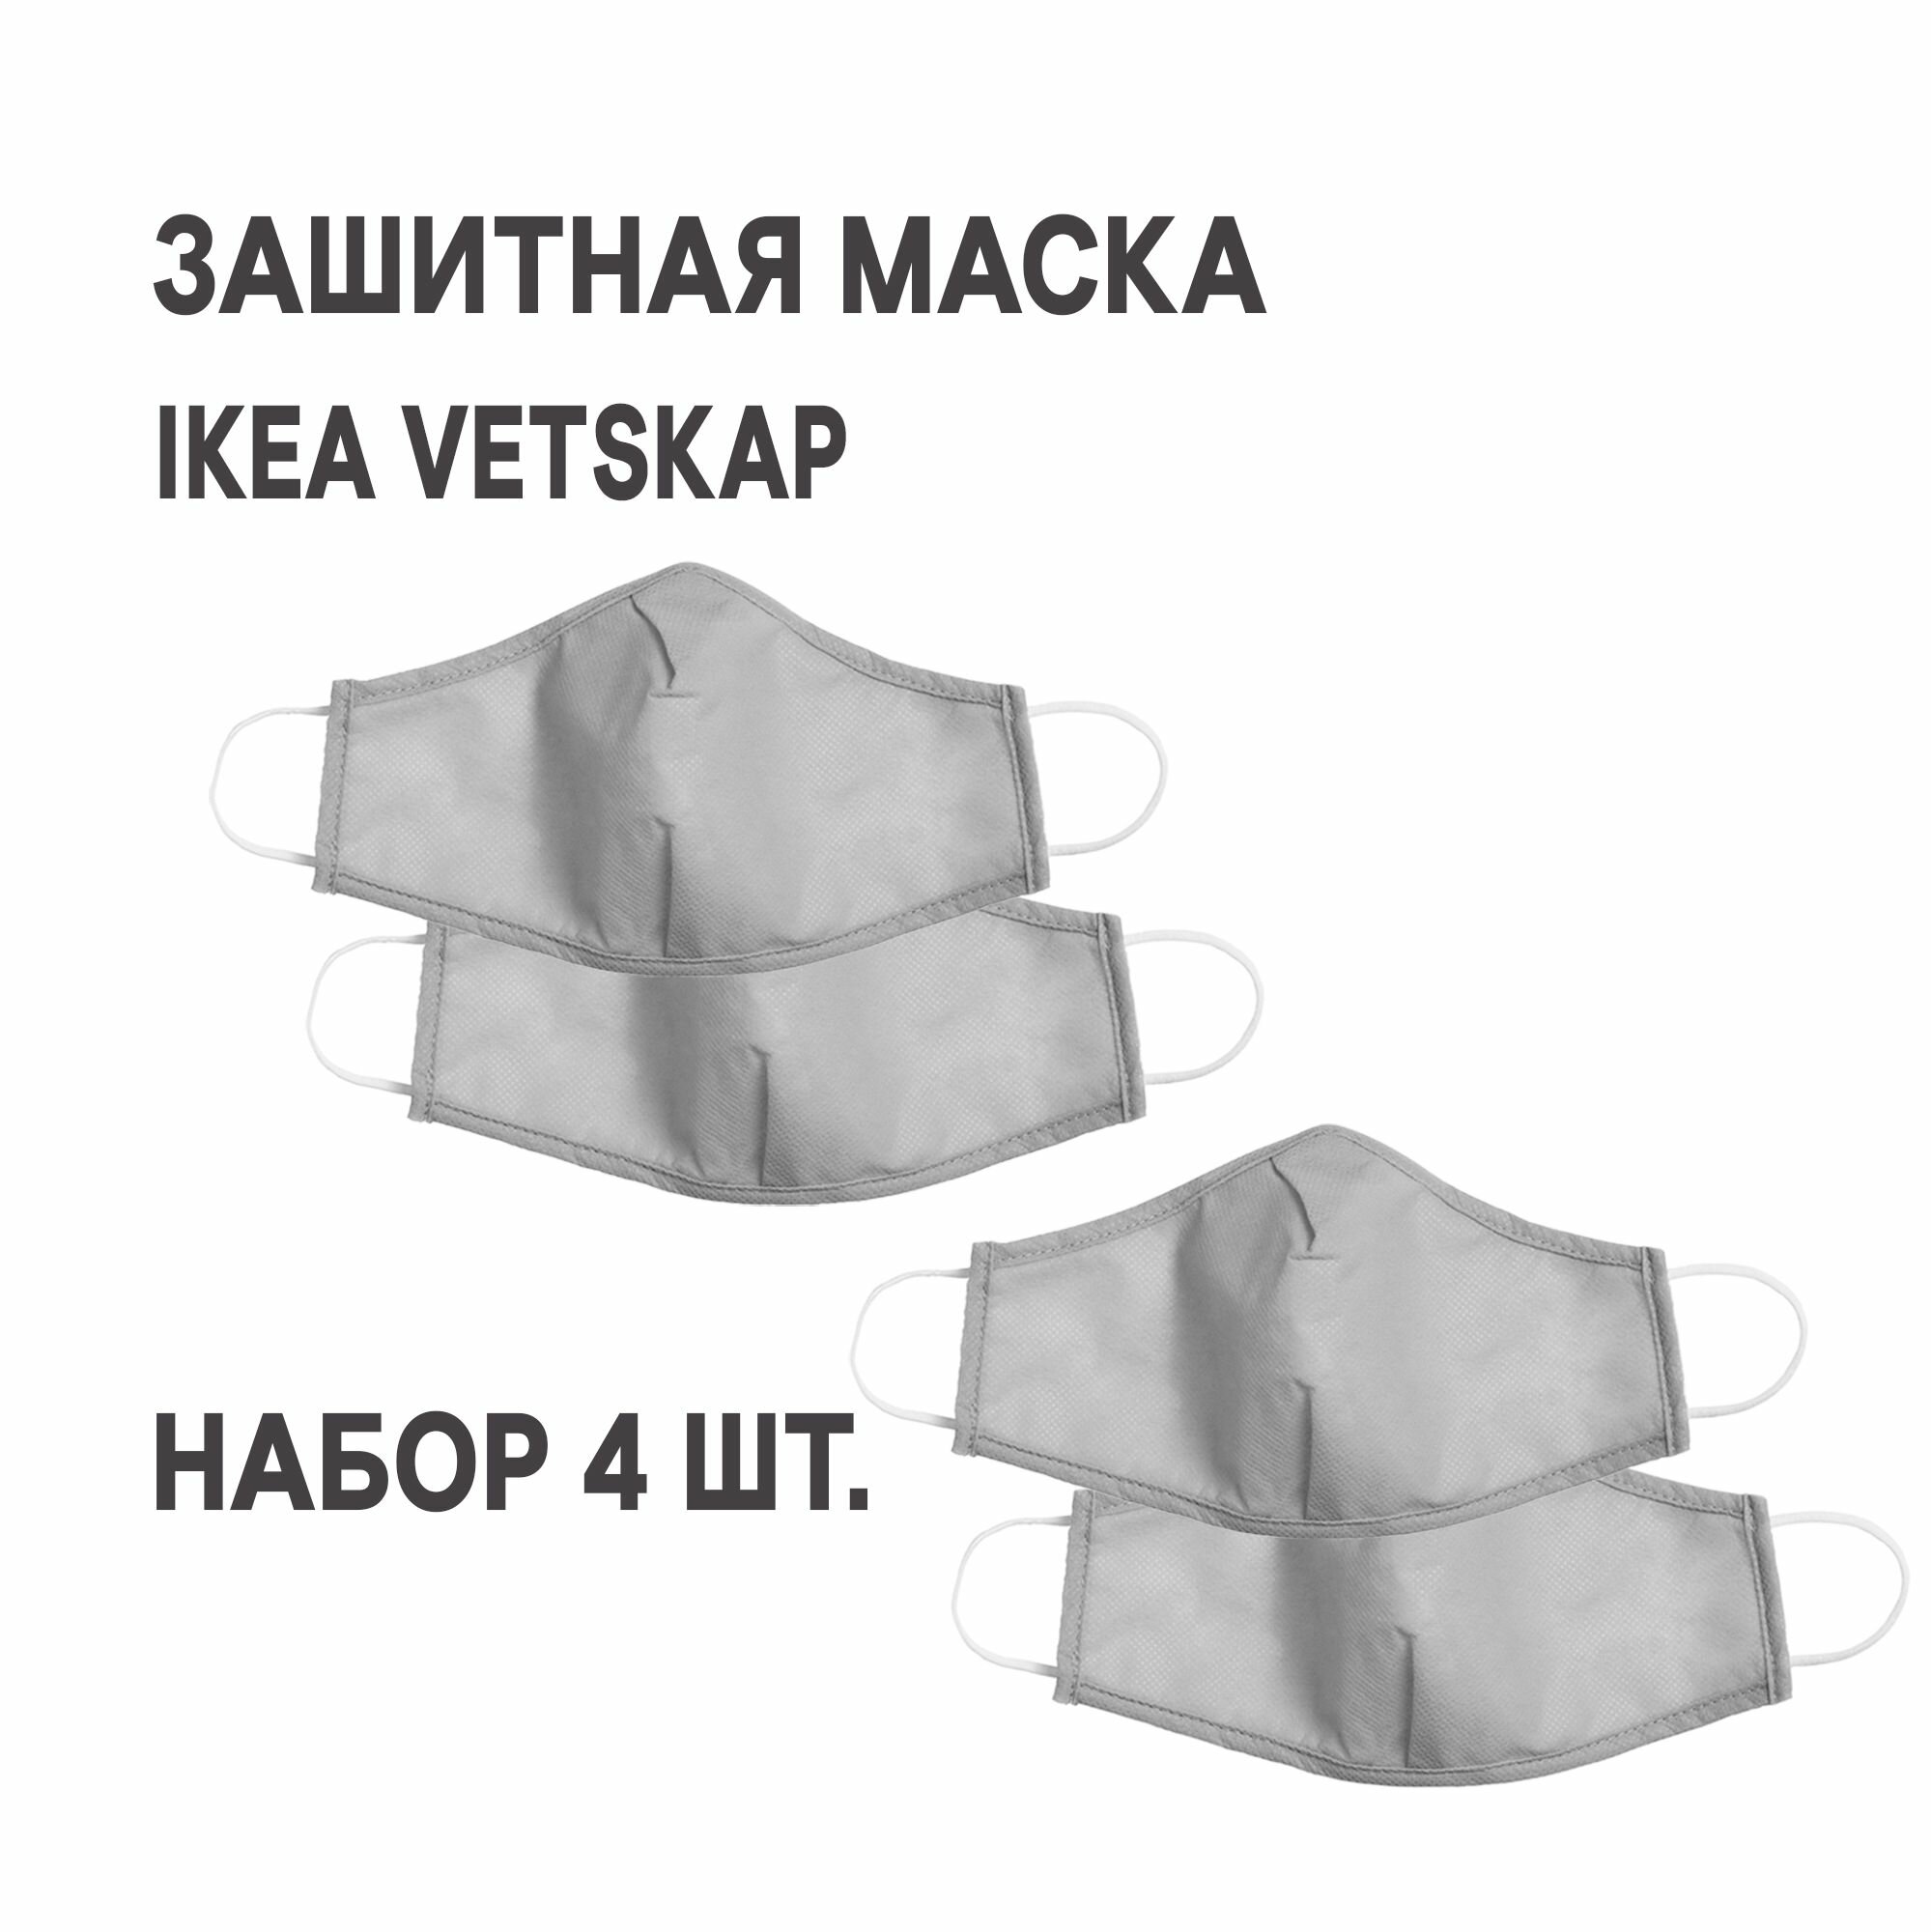 Комплект 2 шт. Защитная маска многоразовая IKEA VETSKAP ветскап светло-серый 2 шт.